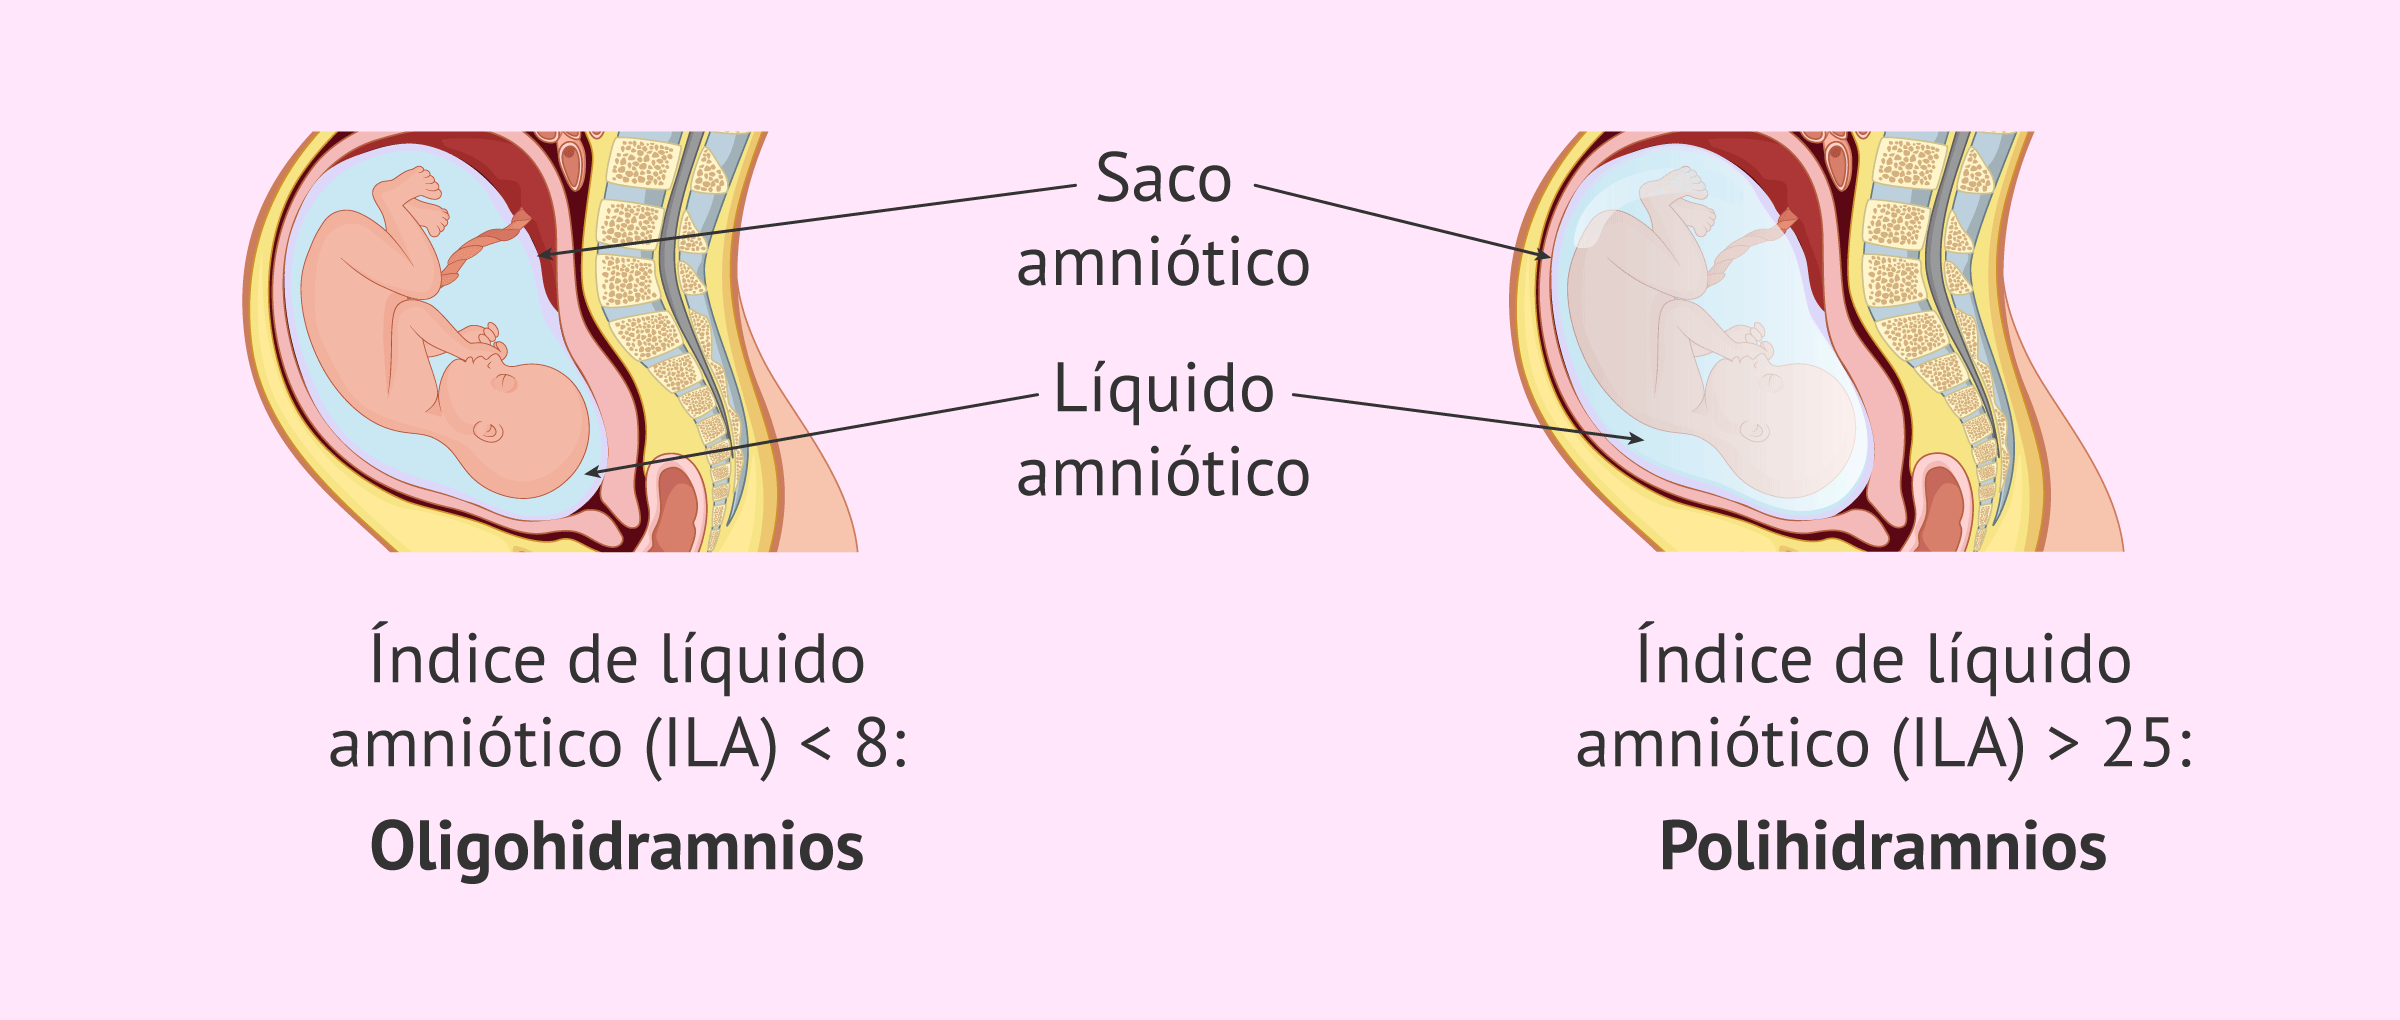 Imagen: Anomalías en la cantidad de líquido amniótico